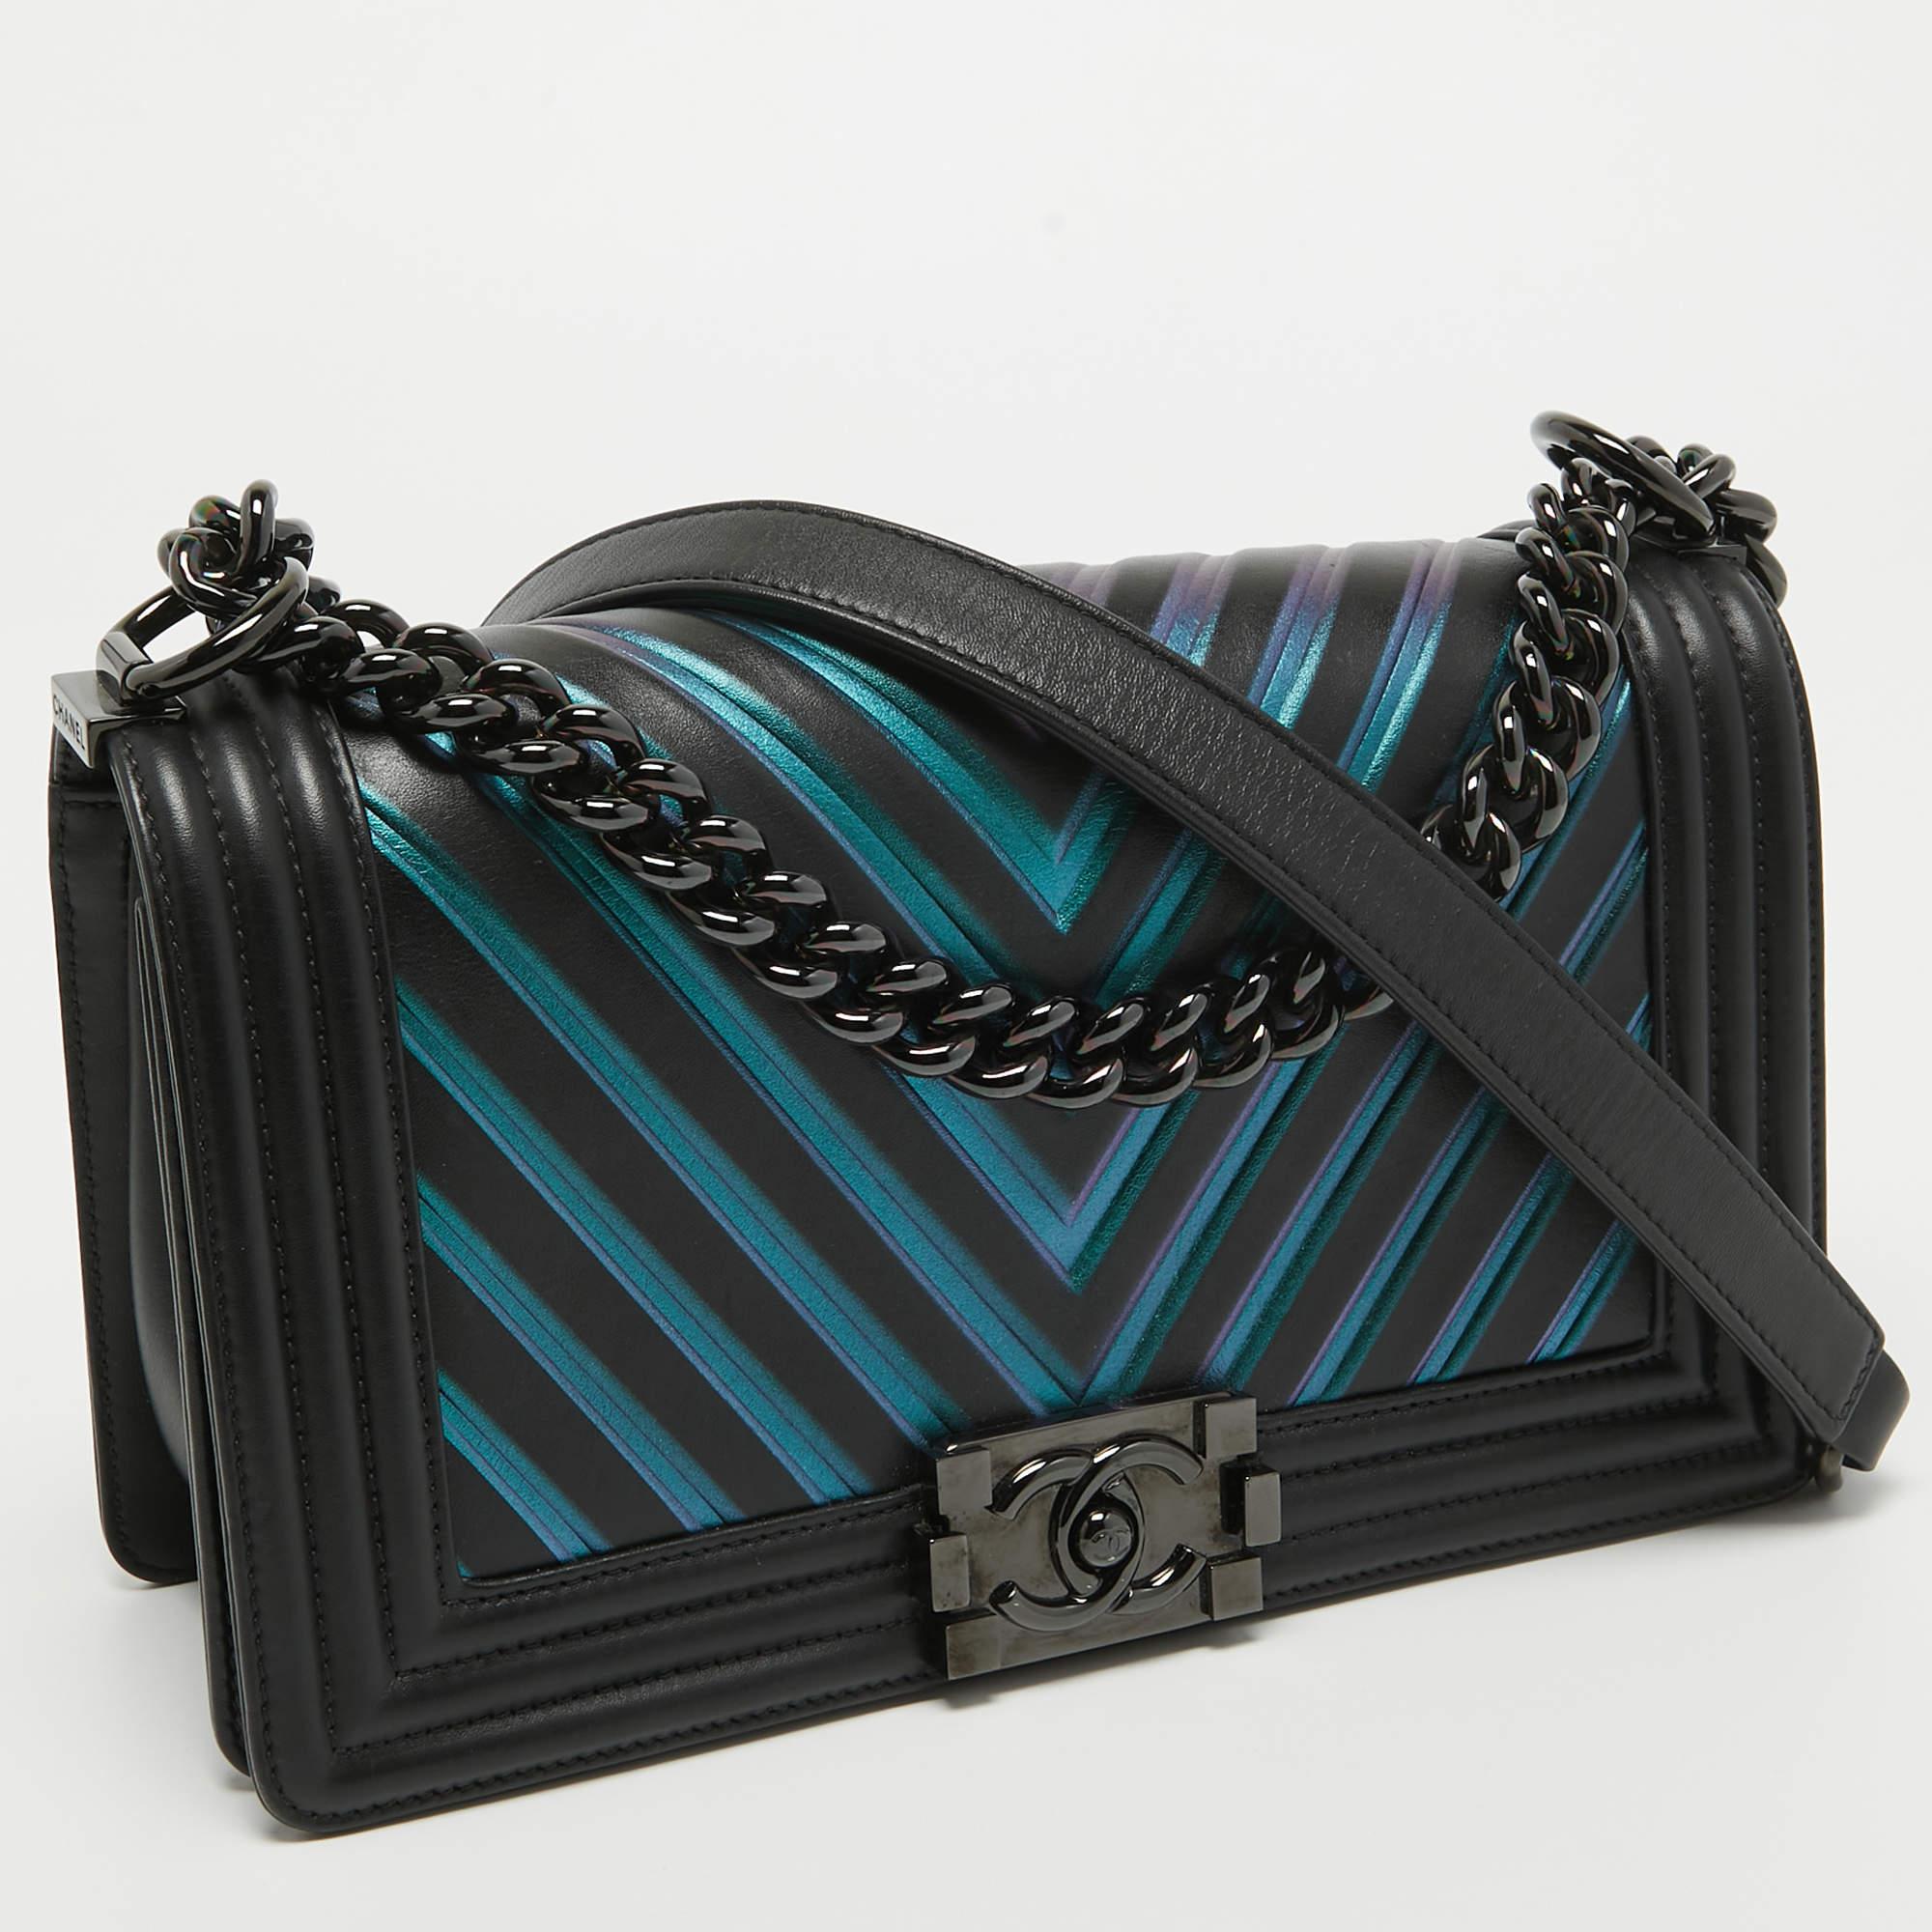 Avec une fabrication impeccable, un quotient de style immense, et un air d'élégance, ce sac Chanel a tout pour plaire ! Cousu à la perfection, le sac à main est fabriqué à partir de matériaux de première qualité afin qu'il vous dure toujours. Avec